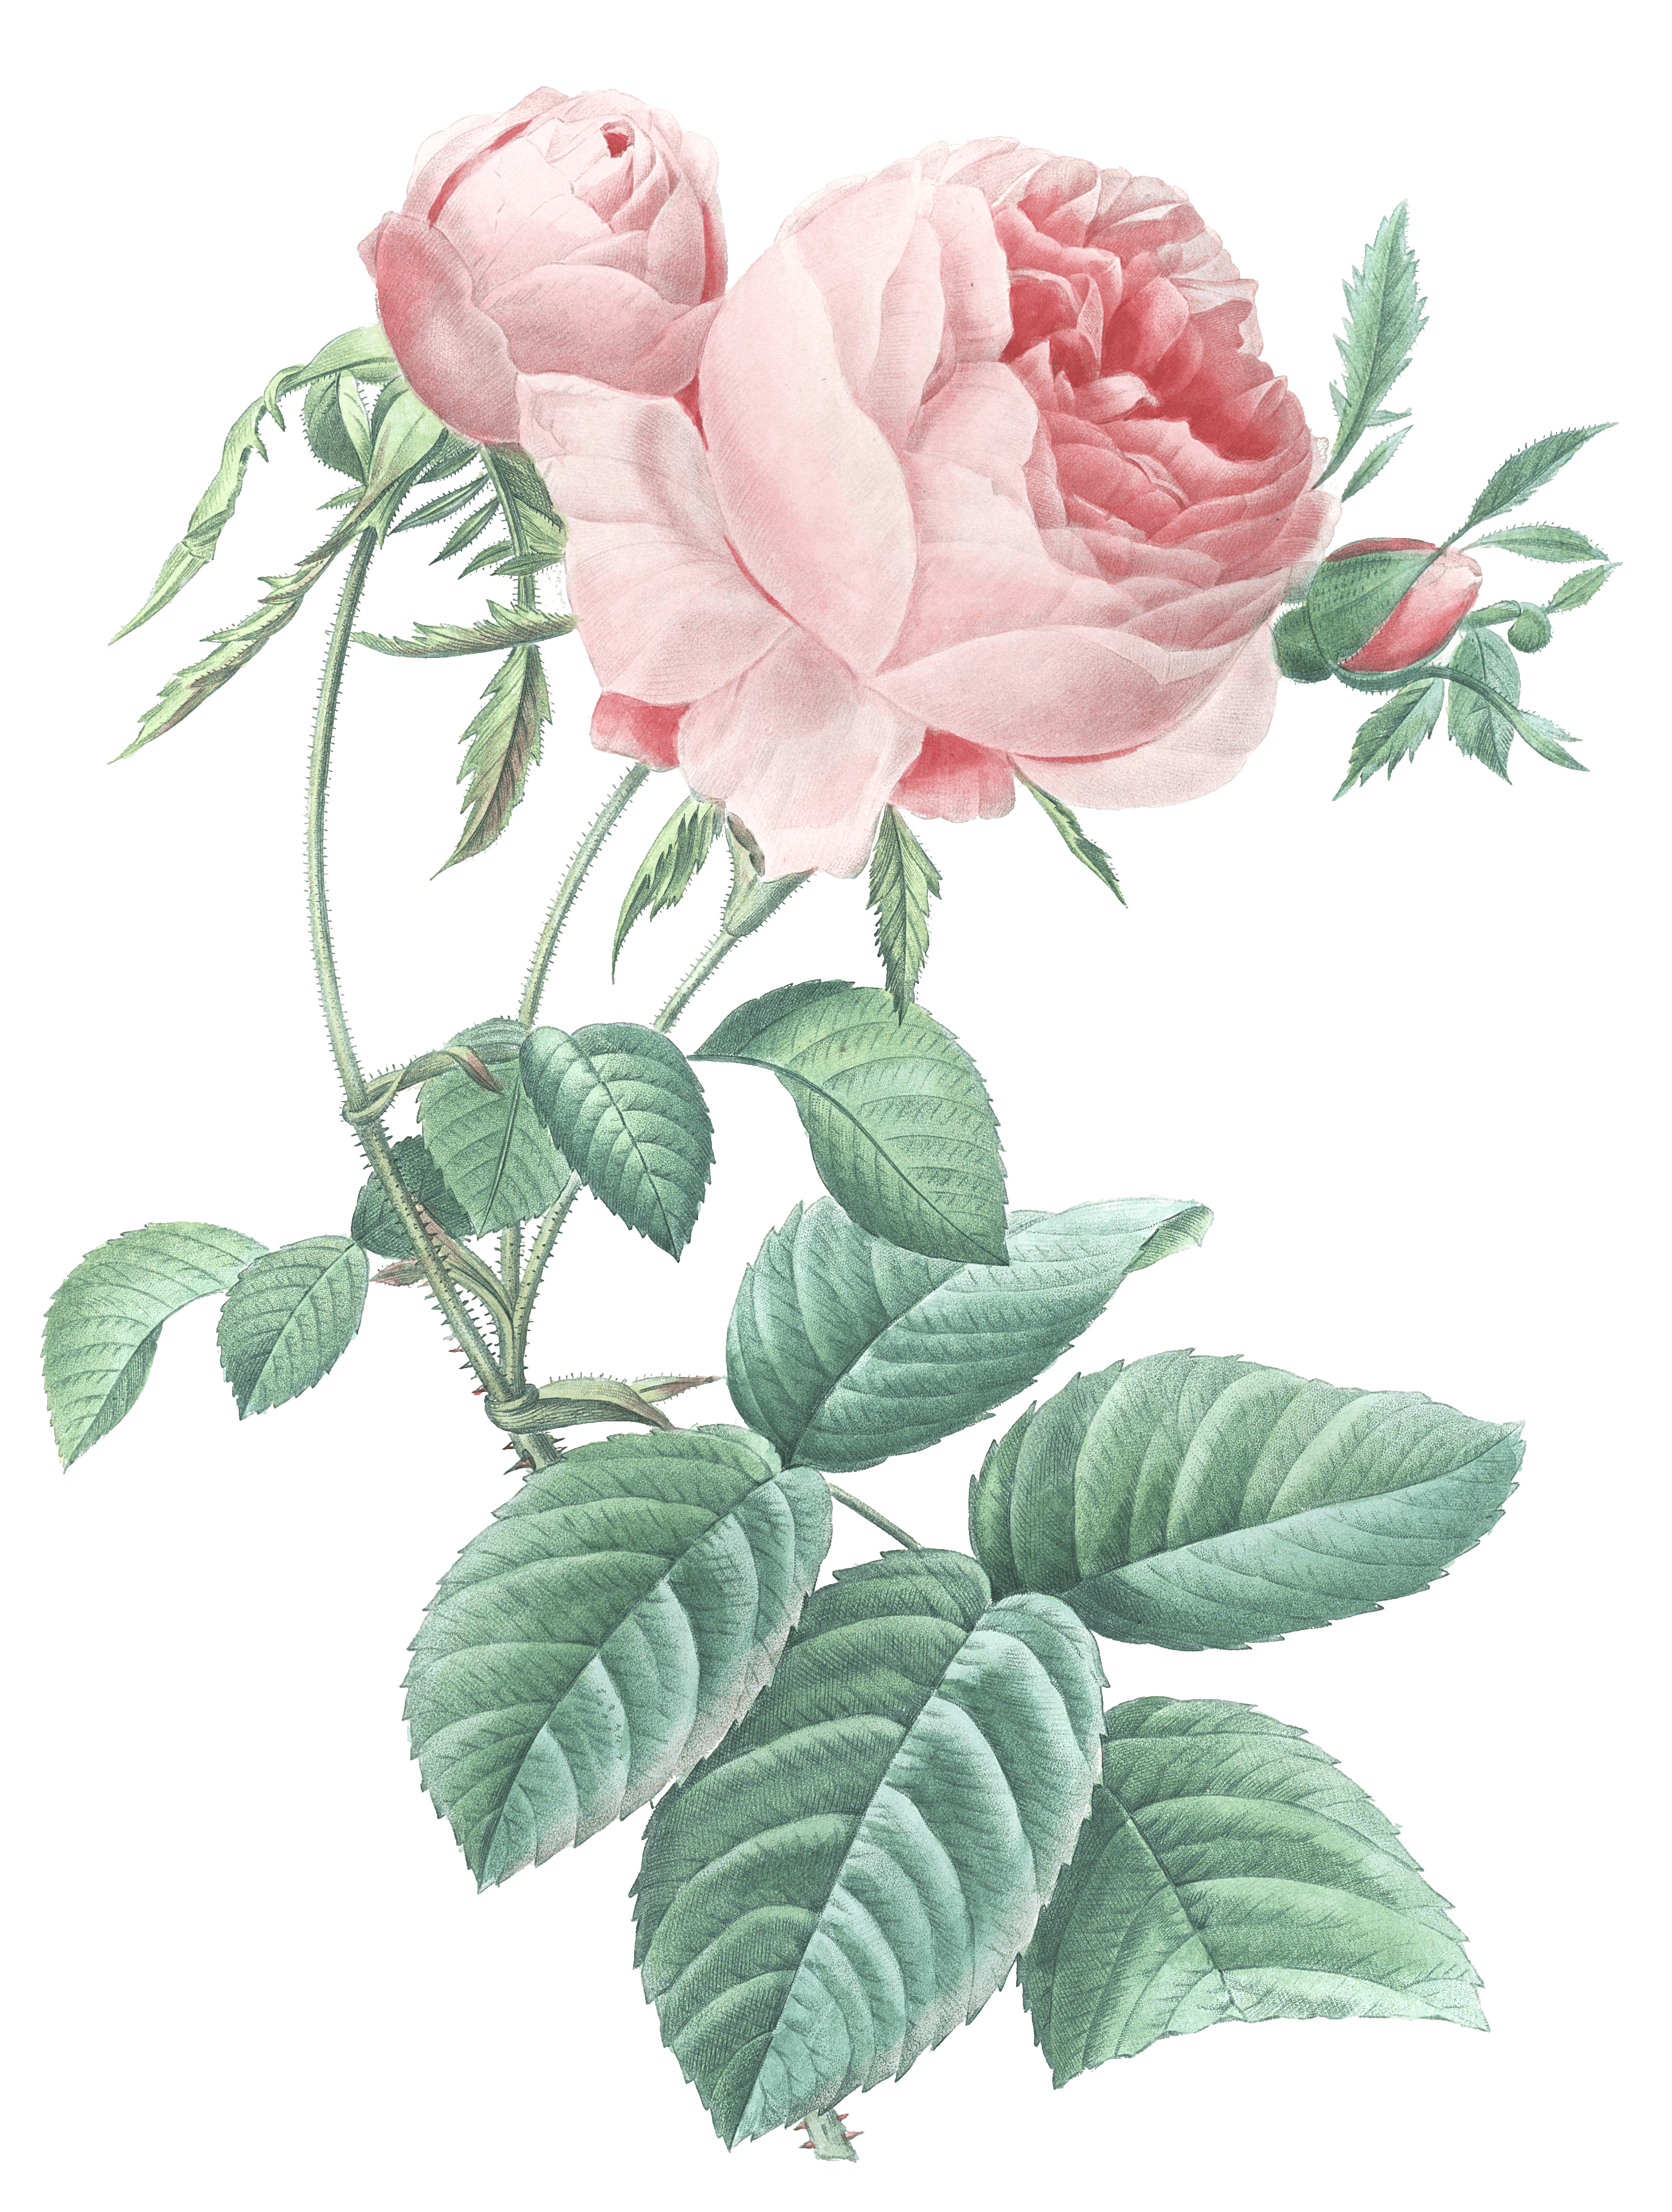 rose flower vintage illustration - Free Vintage Illustrations